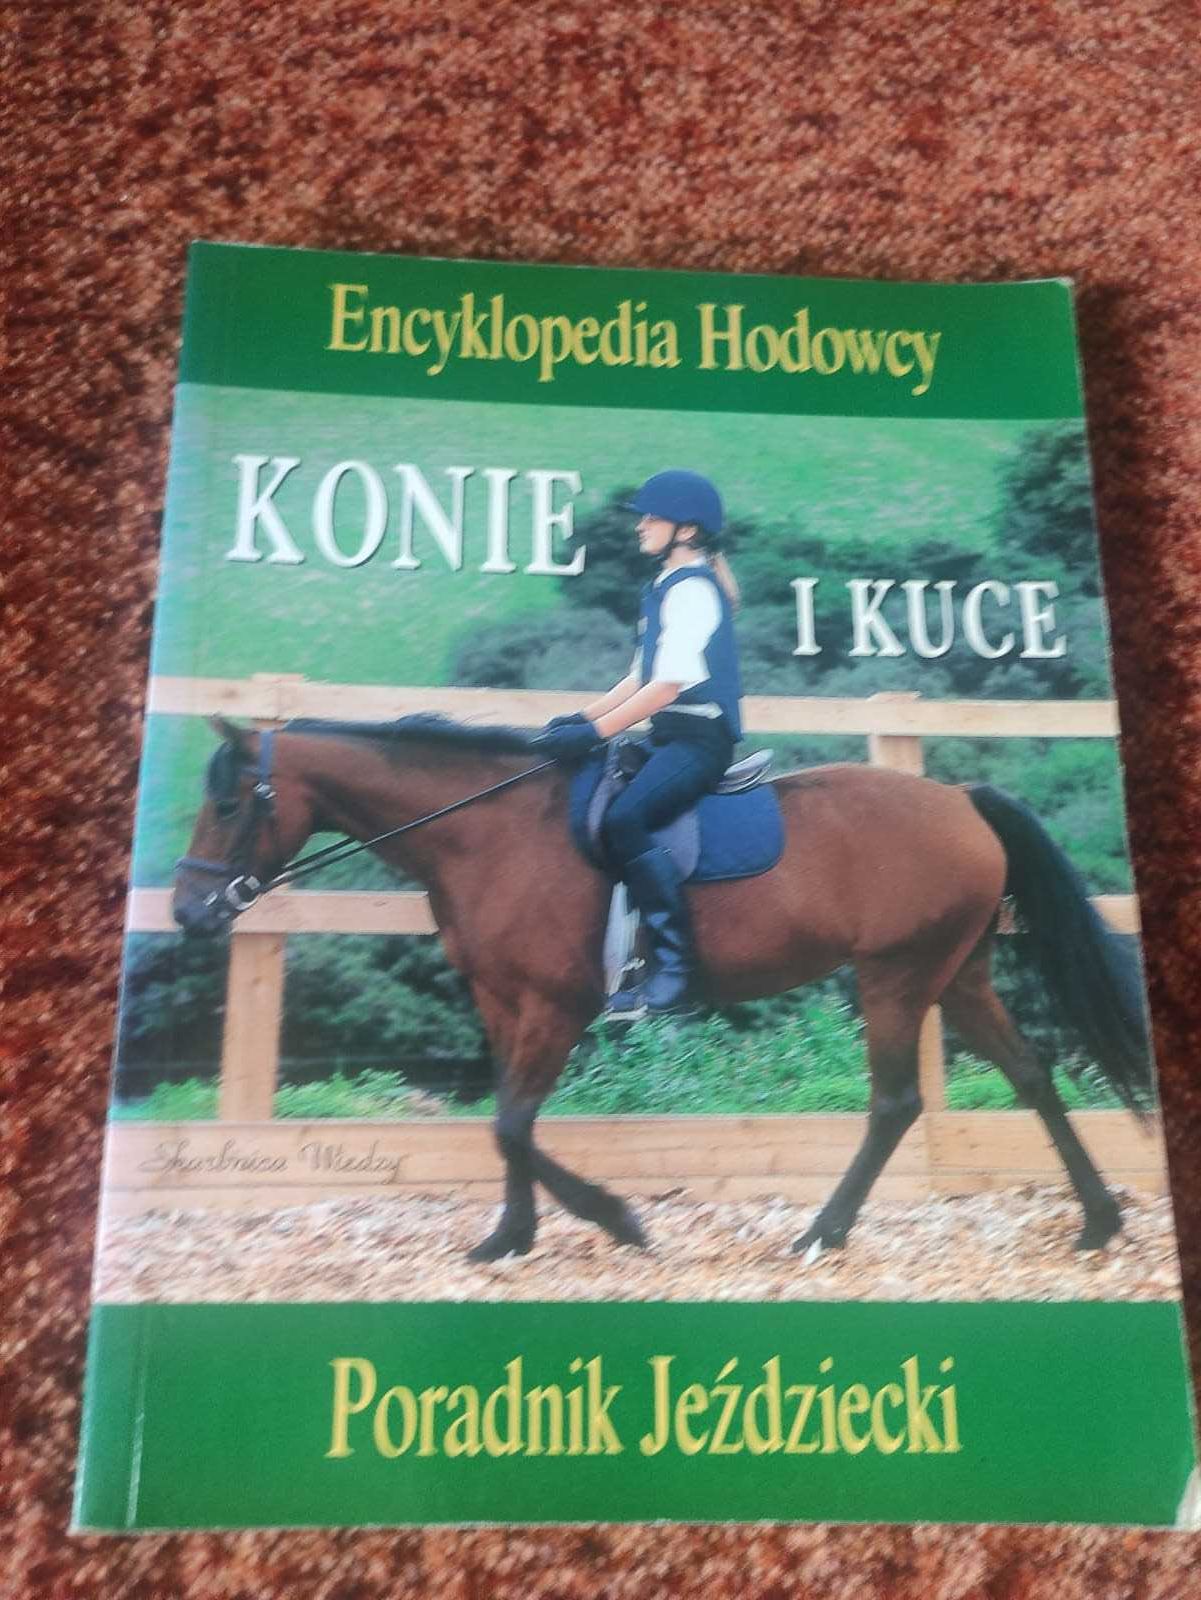 Konie i kuce encyklopedia hodowcy poradnik jeździecki